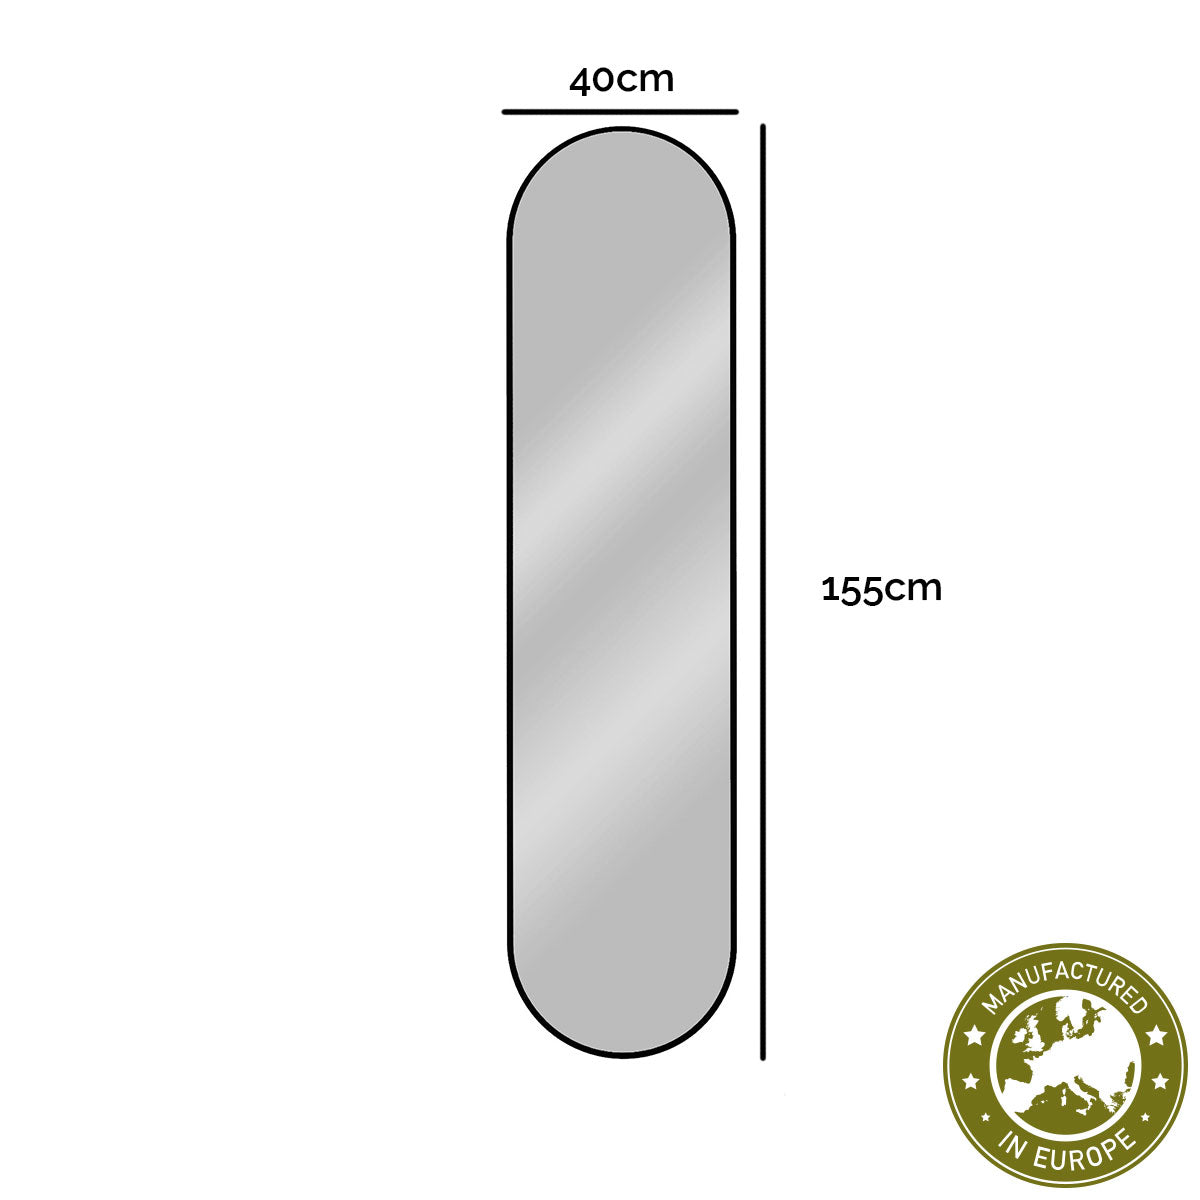 Spiegel pastillenförmig 'Pille' | in verschiedenen Größen | in verschiedenen Ausführungen | Manufactured in Europe